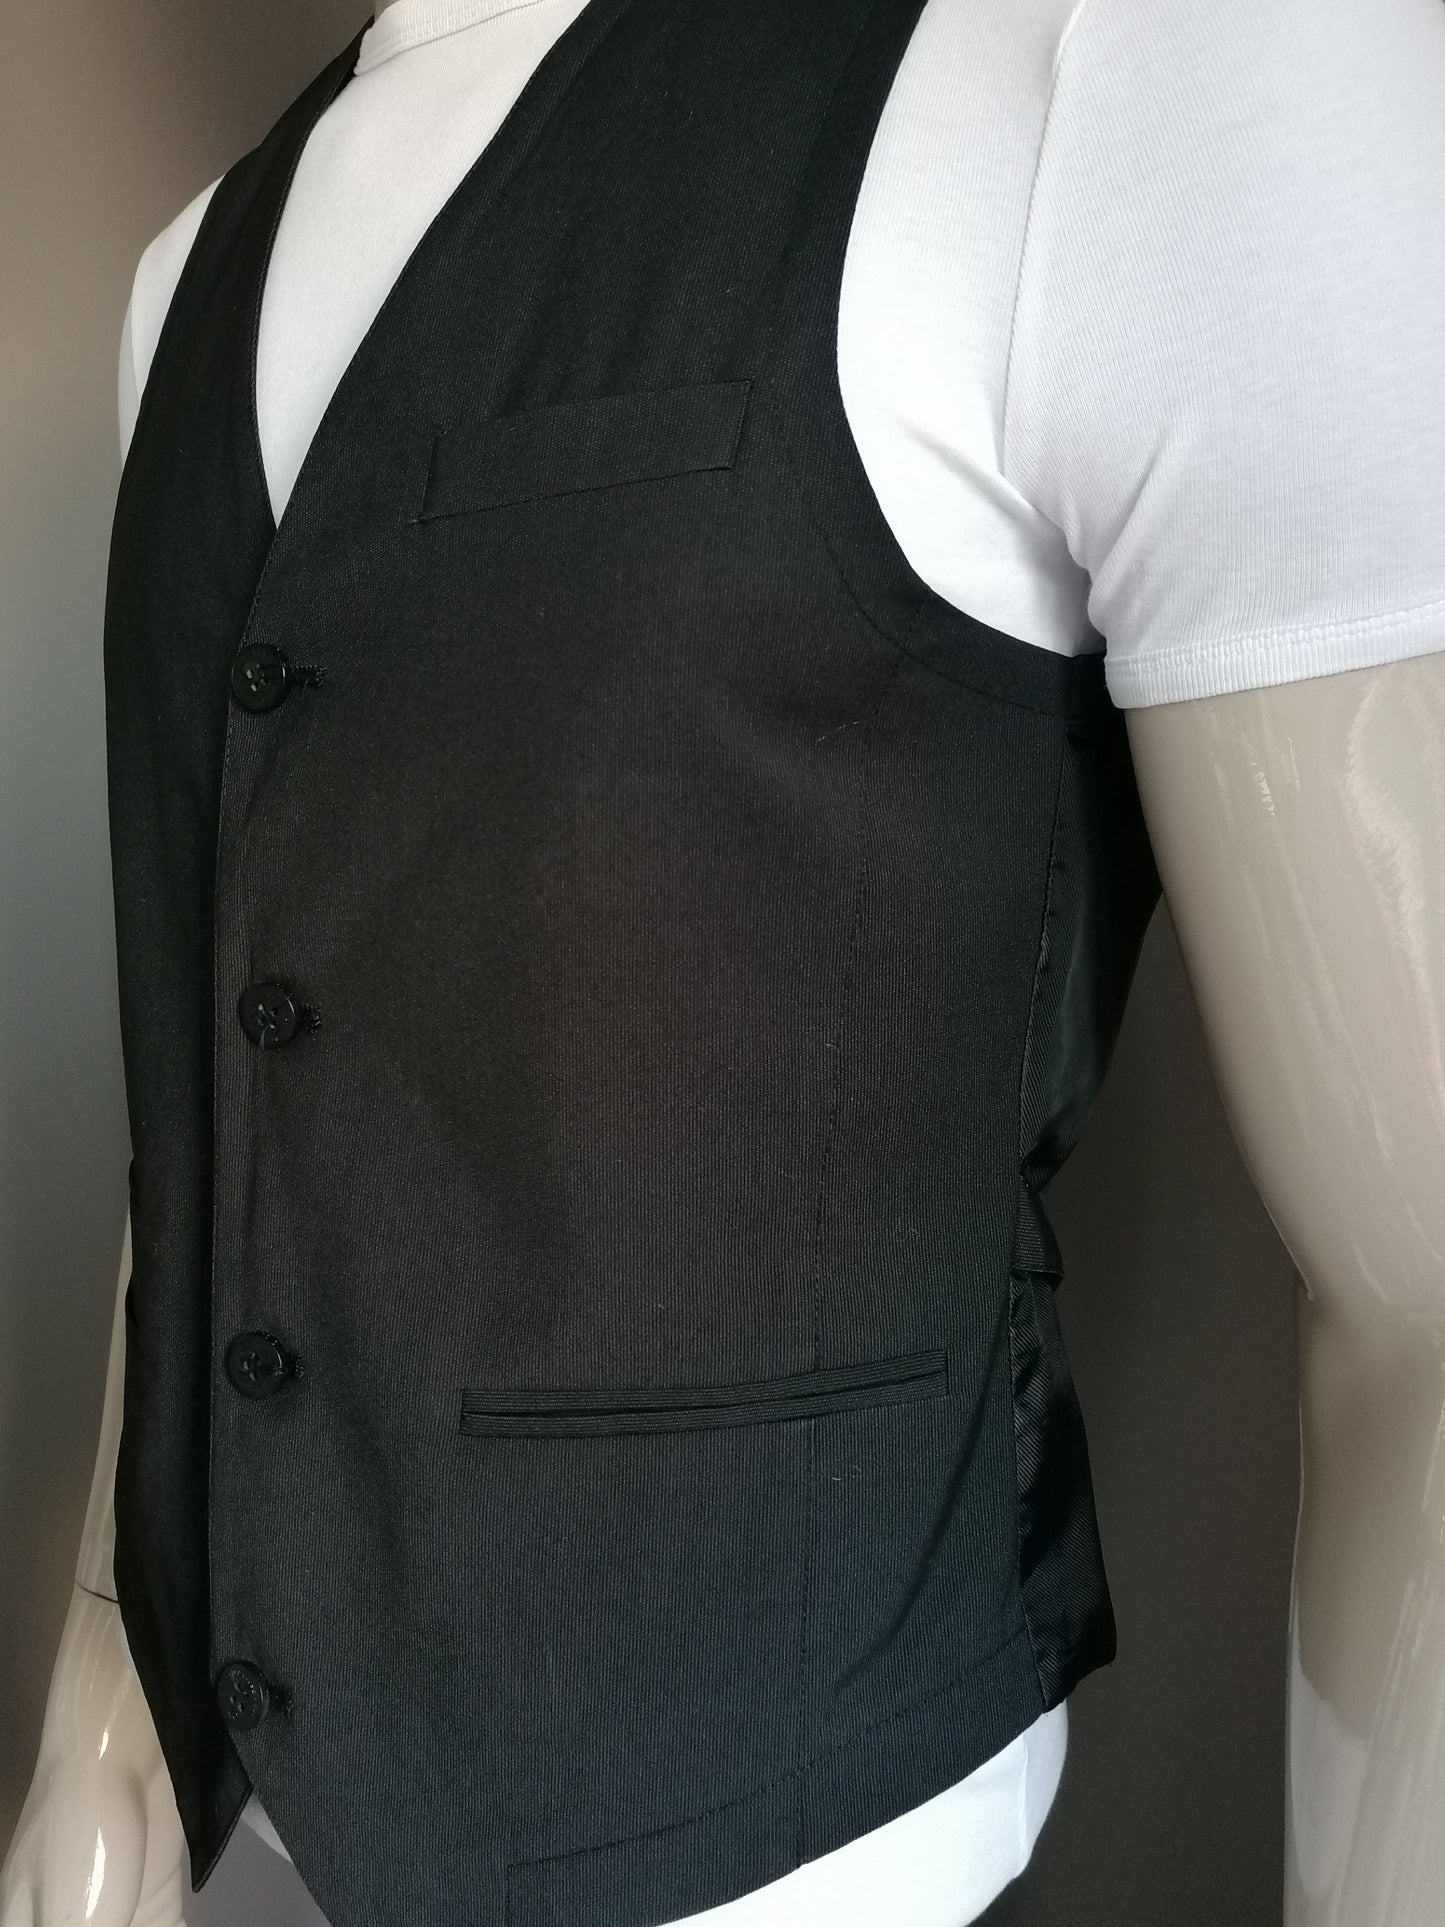 Soho waistcoat. Dark gray striped. Size 50 / M. # 261